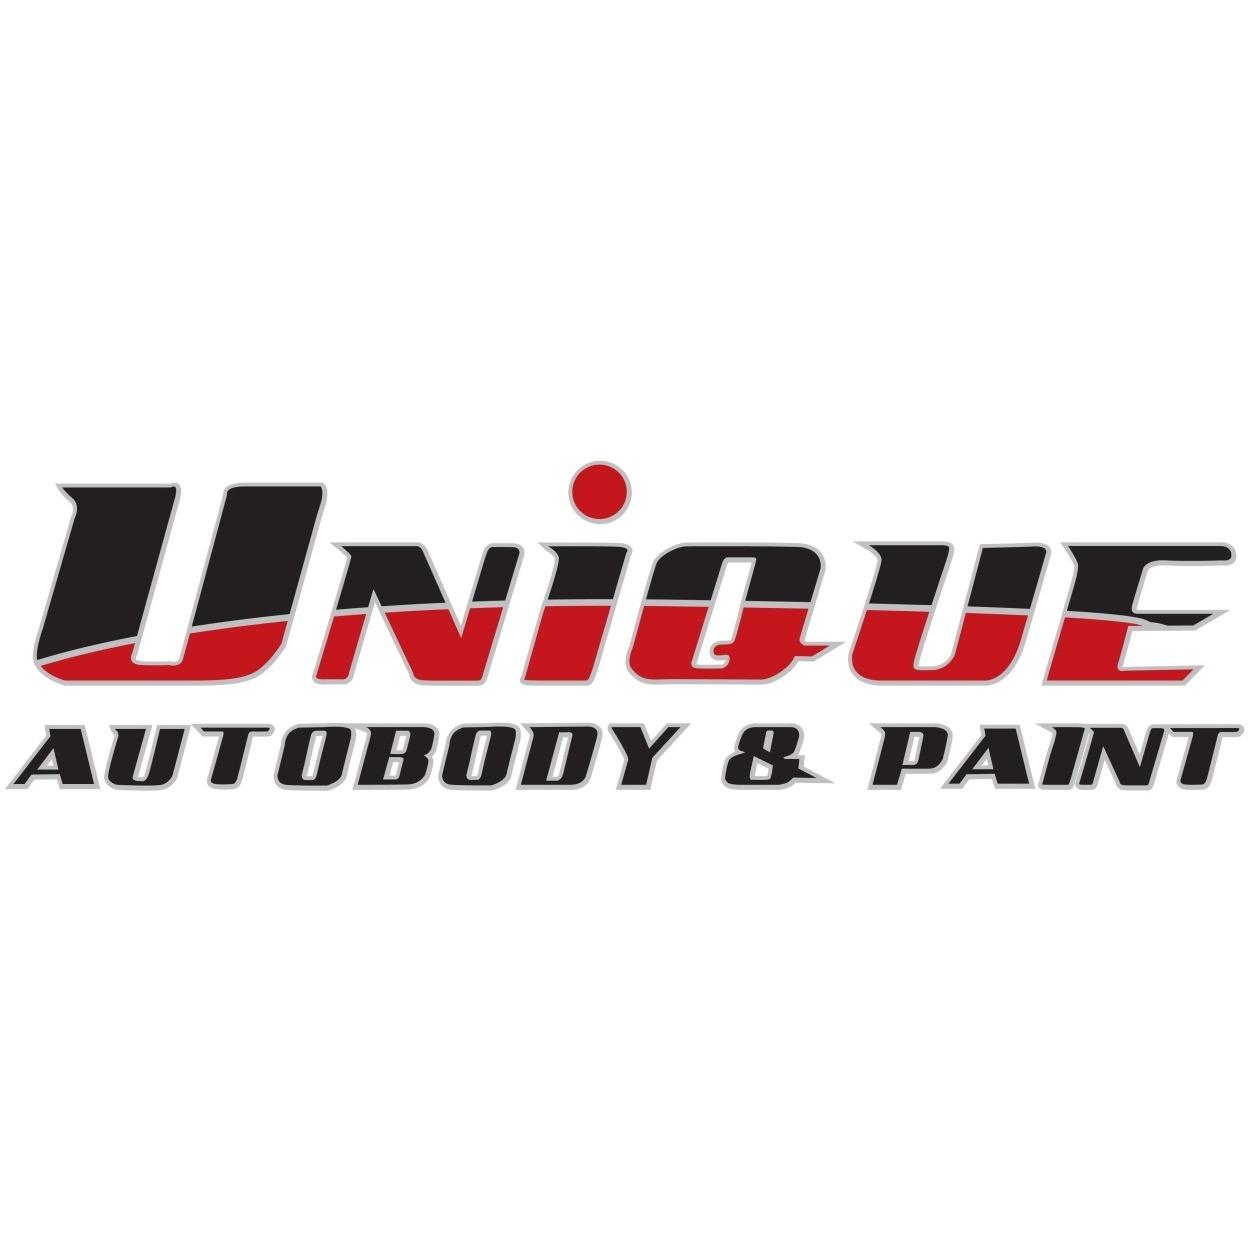 Unique Autobody & Collision Center - Palm Desert, CA 92211 - (760)779-9121 | ShowMeLocal.com